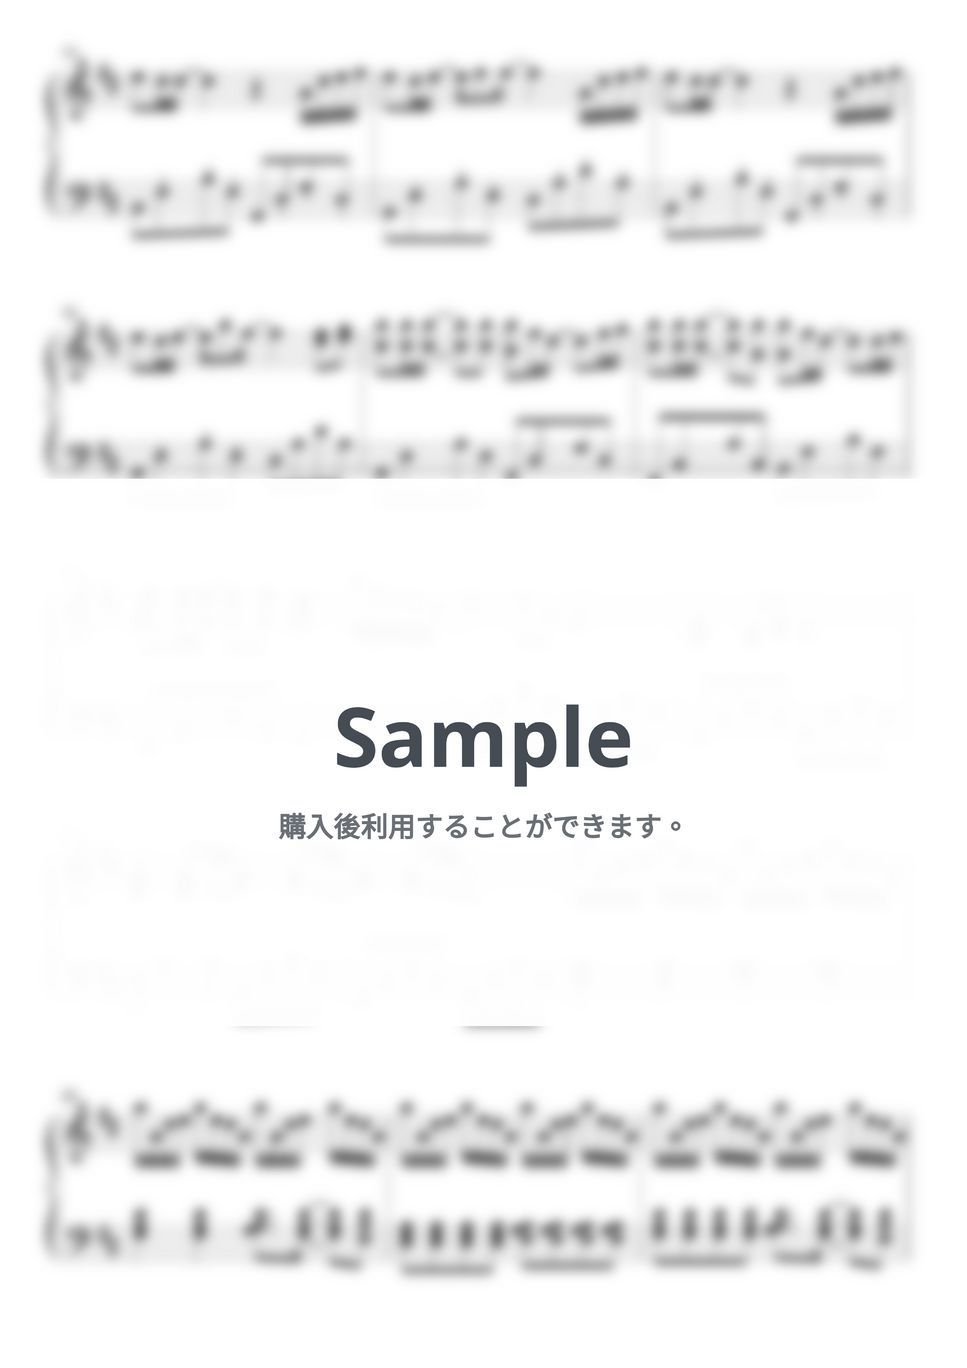 久石譲 - Summer (PIANO COVER) by HANPPYEOMPIANO